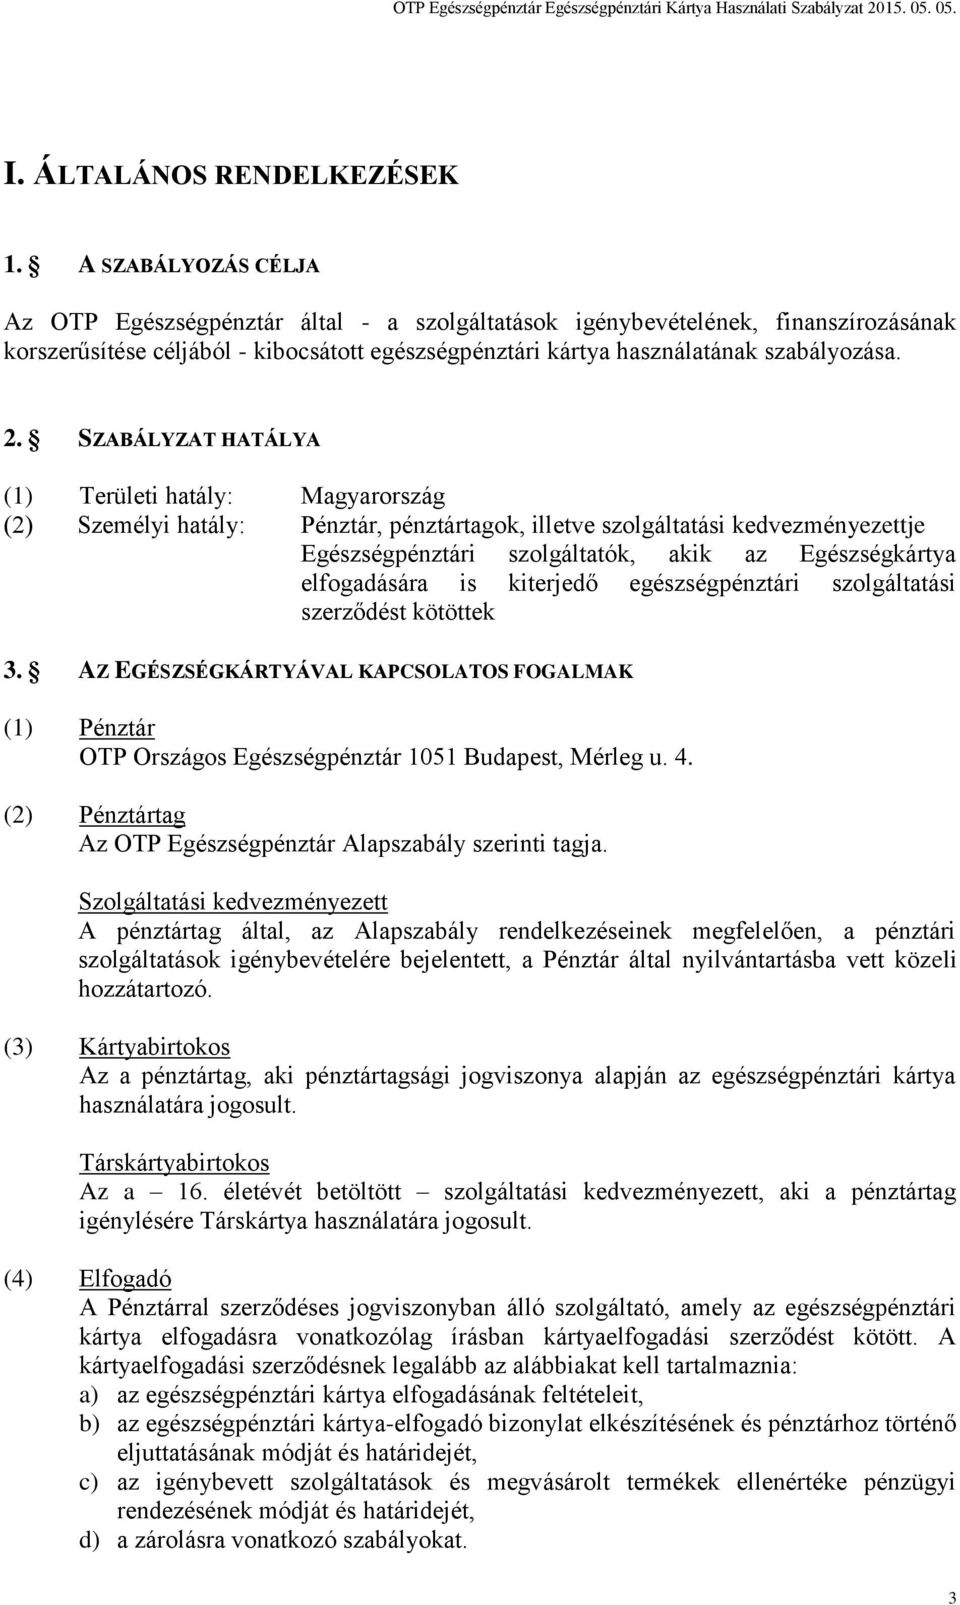 SZABÁLYZAT HATÁLYA (1) Területi hatály: Magyarország (2) Személyi hatály: Pénztár, pénztártagok, illetve szolgáltatási kedvezményezettje Egészségpénztári szolgáltatók, akik az Egészségkártya